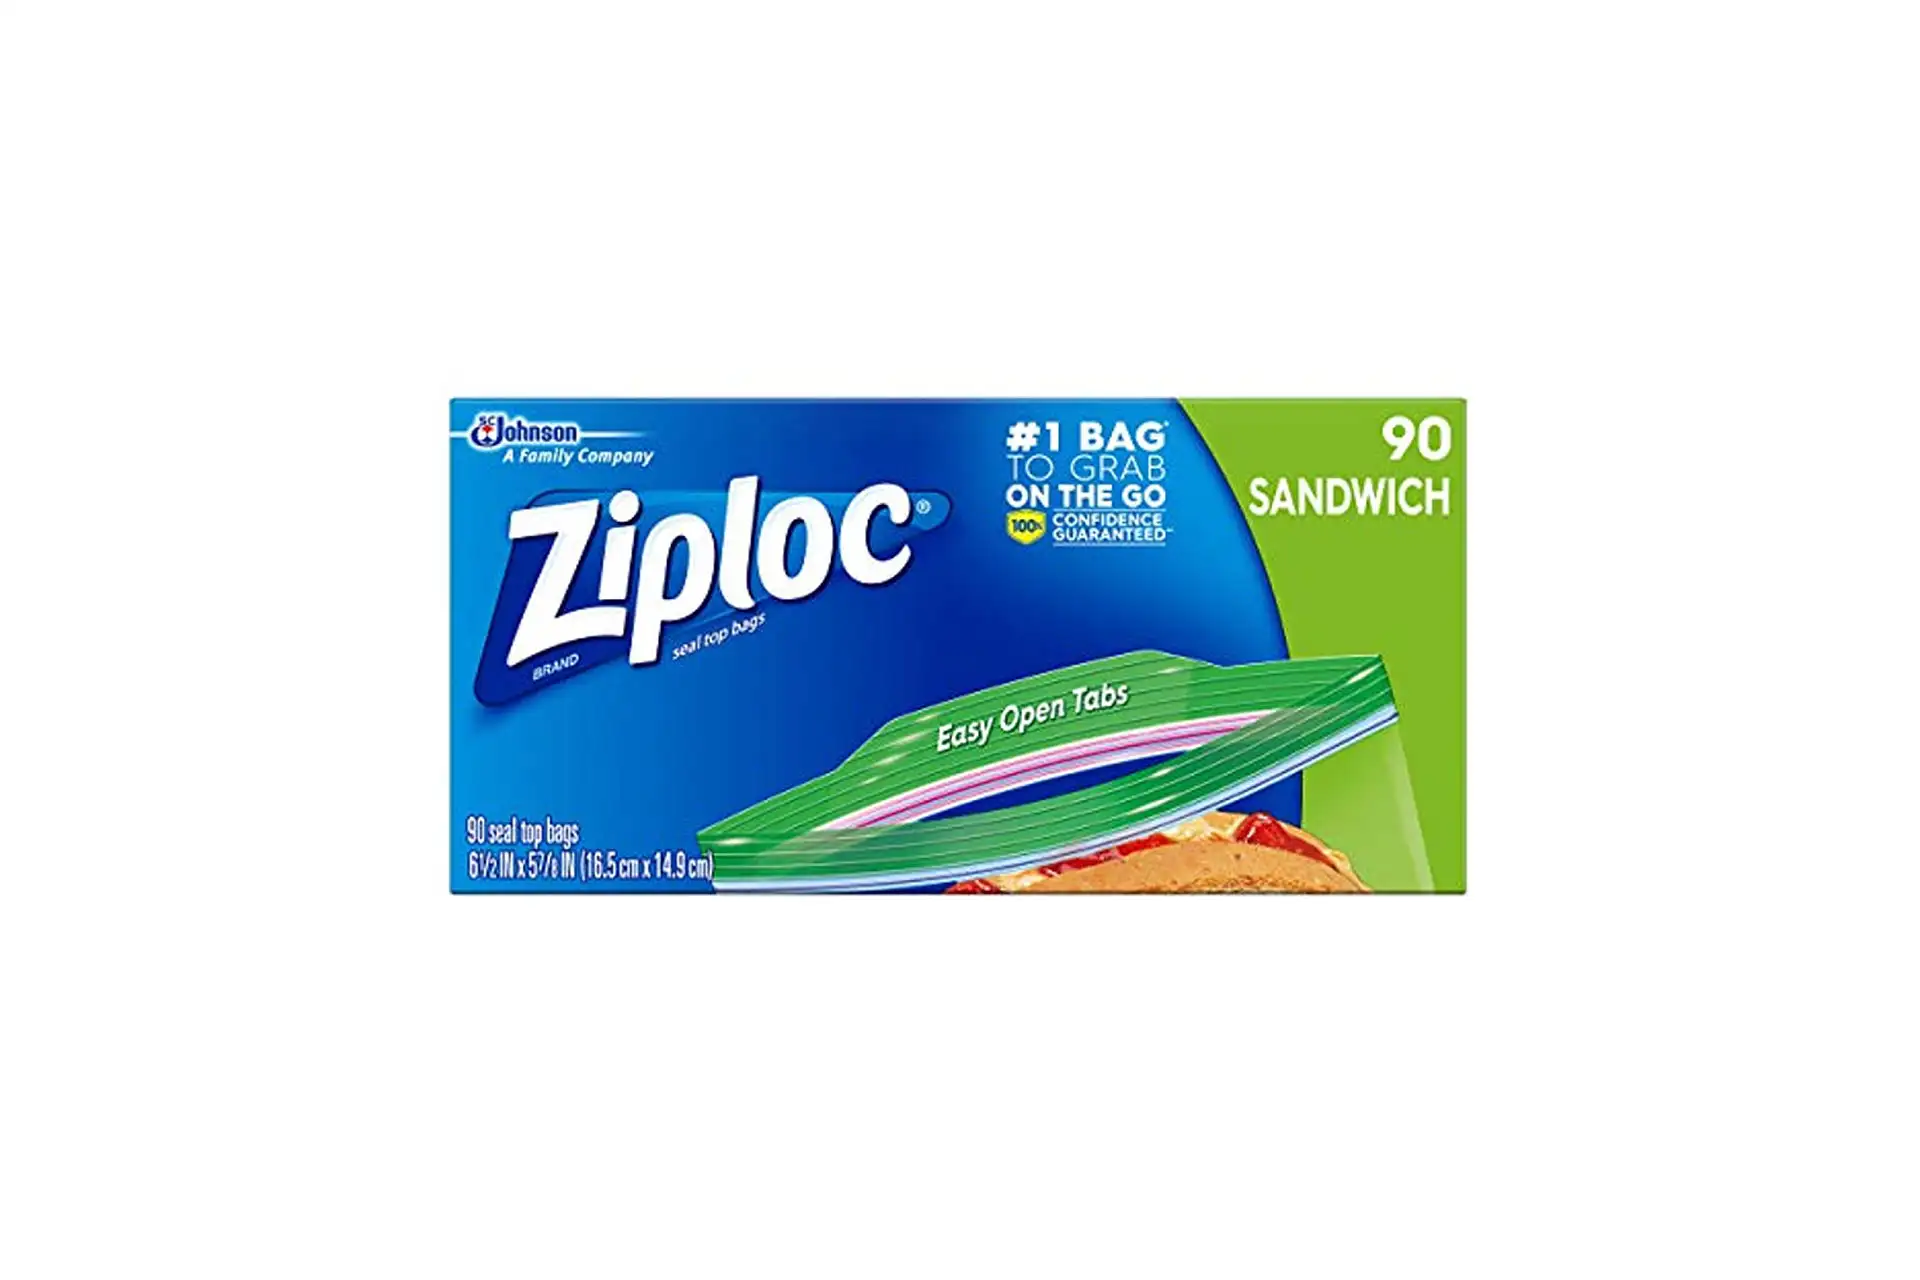 Ziploc Bags; Courtesy of Amazon